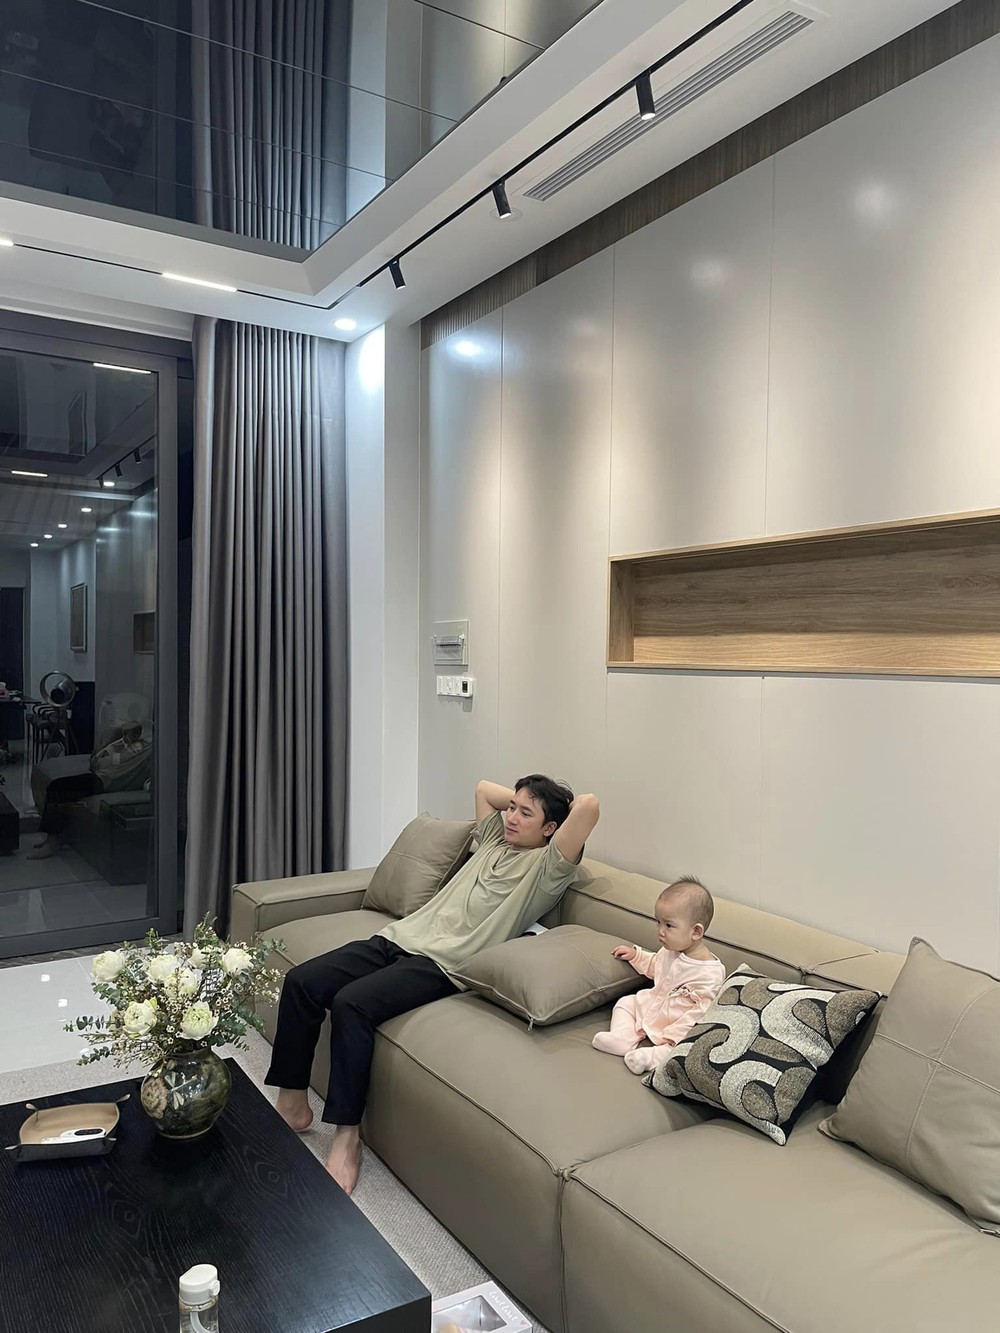 Vợ chồng Phan Mạnh Quỳnh khoe căn nhà 3 tầng mới xây: Tự tay chọn từng viên gạch, không gian khang trang xịn xò - Ảnh 1.